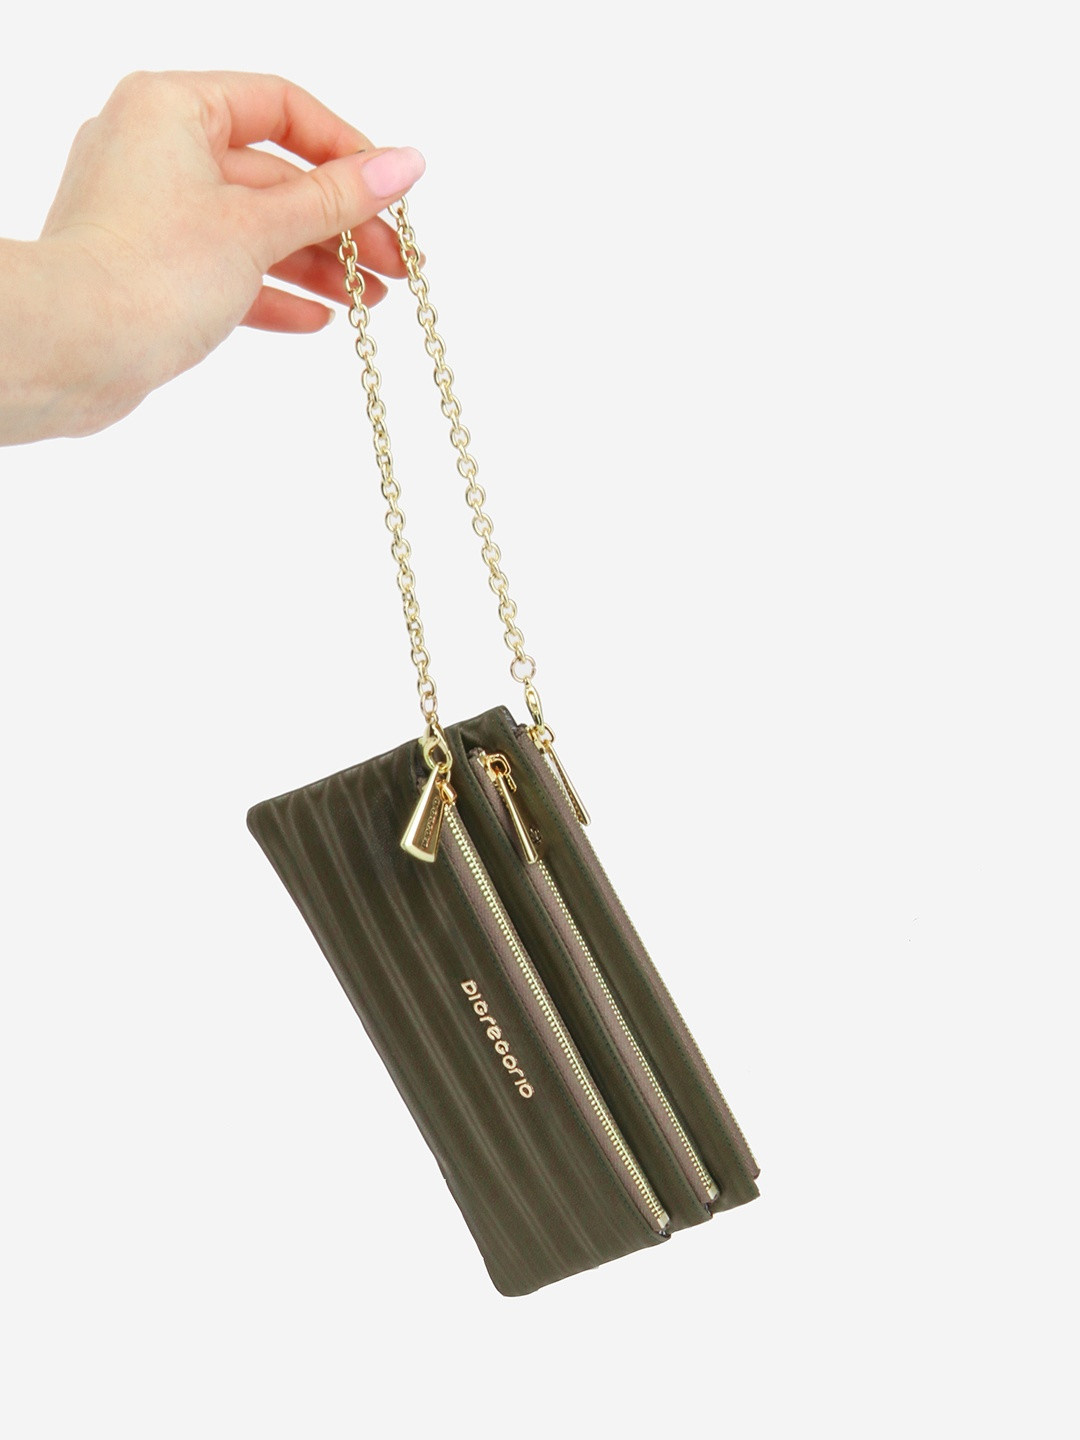 Фото Женский кошелек-клатч с выделкой под кожу ската с золотистой цепочкой-браслетом Кошельки